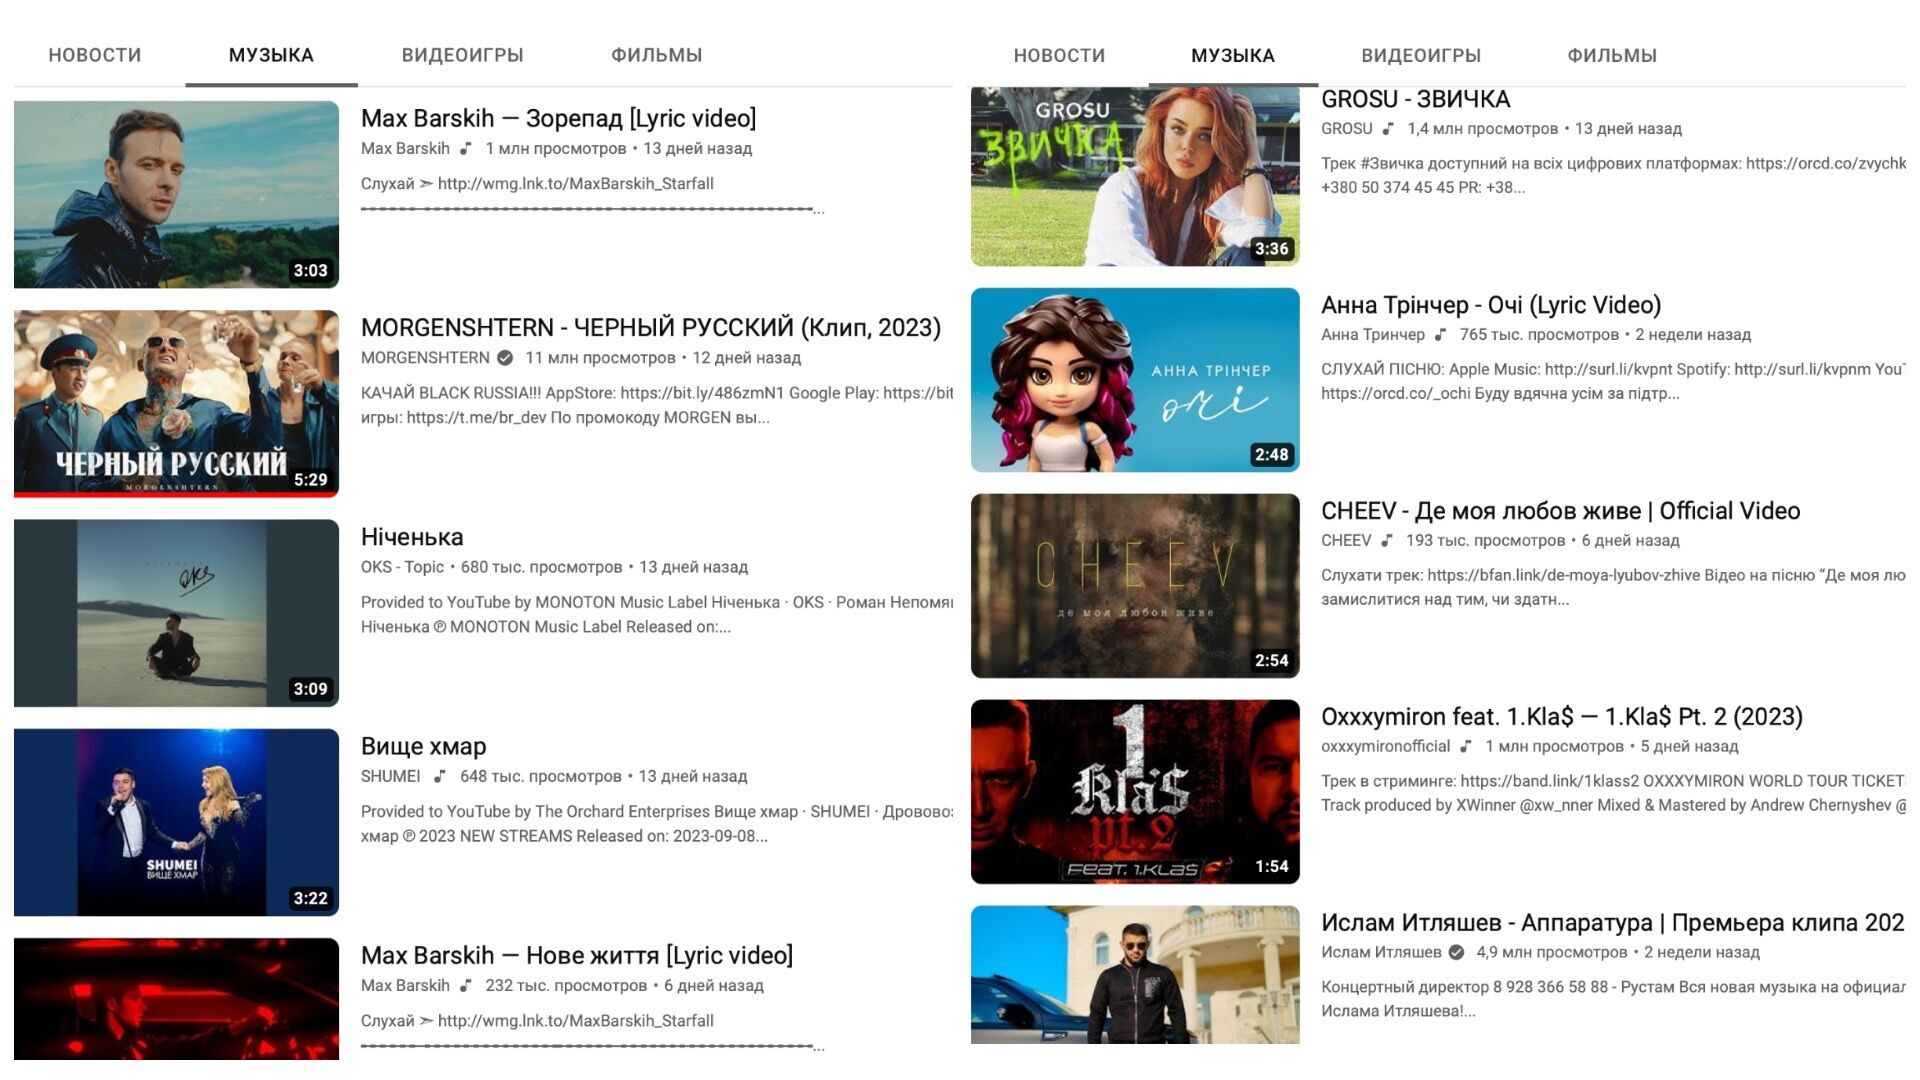 Макс Барских сдвинул Моргенштерна с первого места на YouTube: всего в топ-10 самых популярных клипов трое россиян